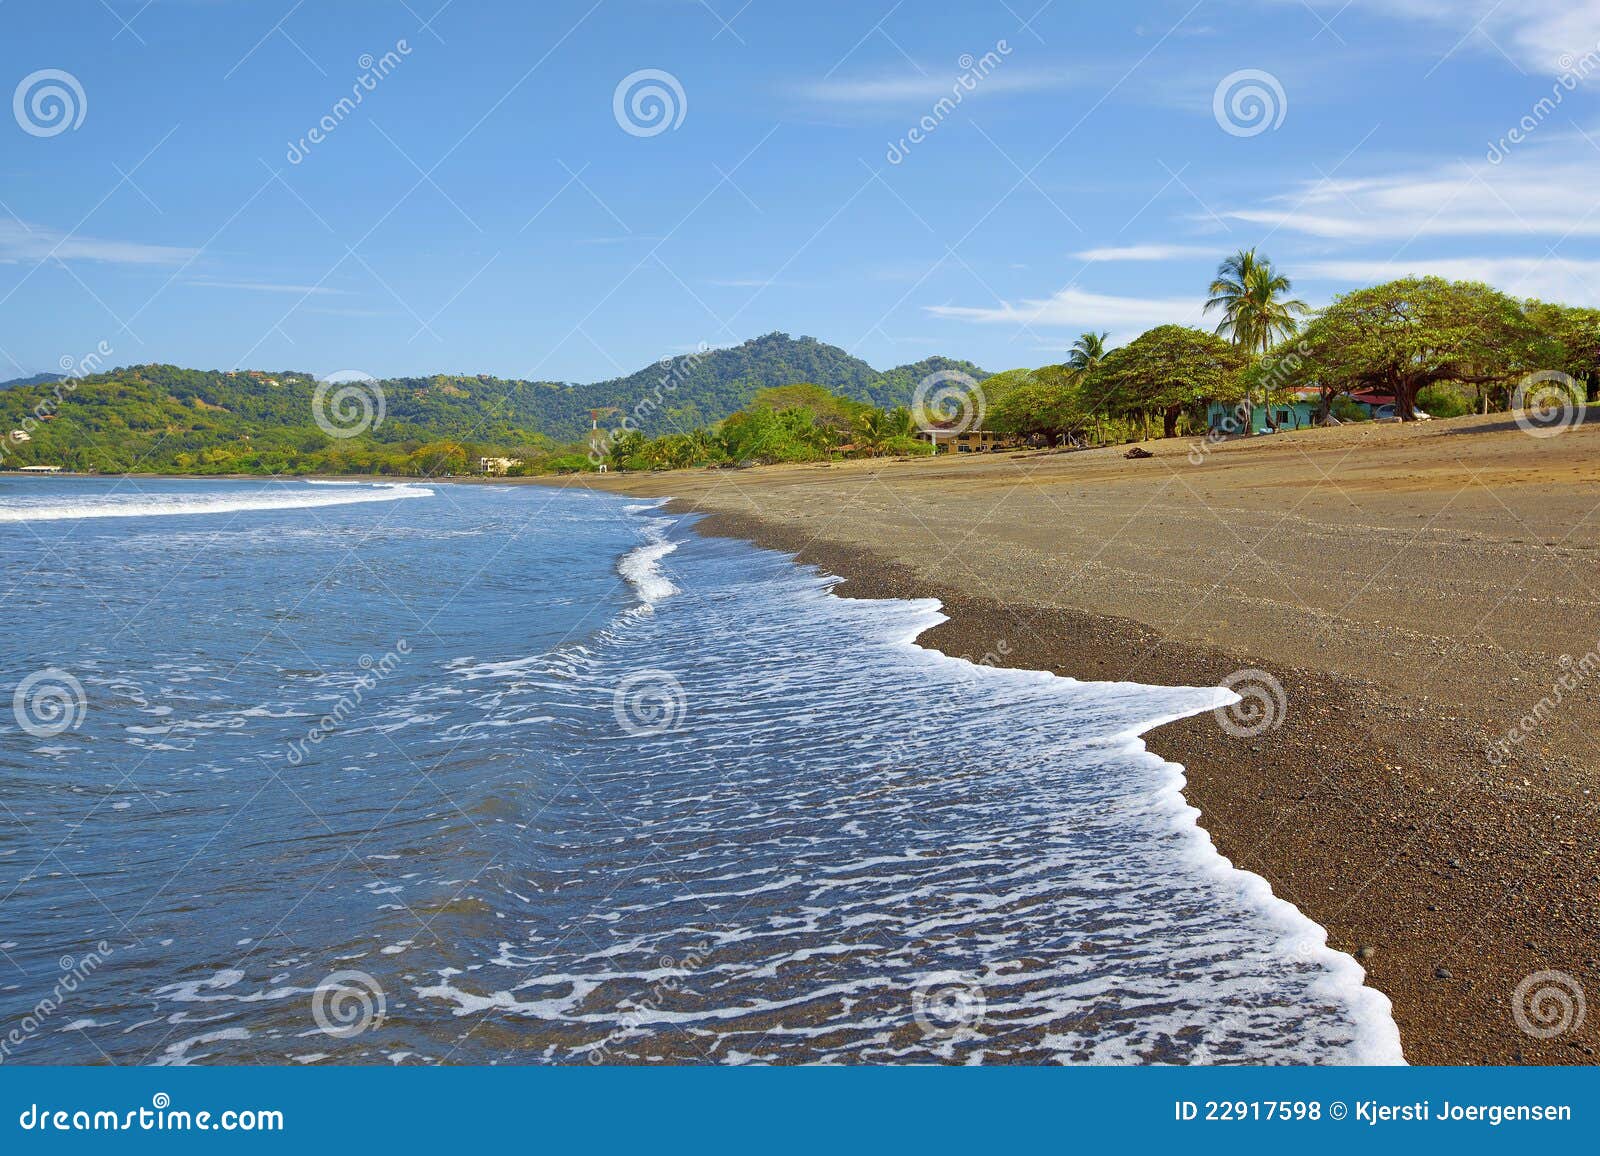 beach in guanacaste